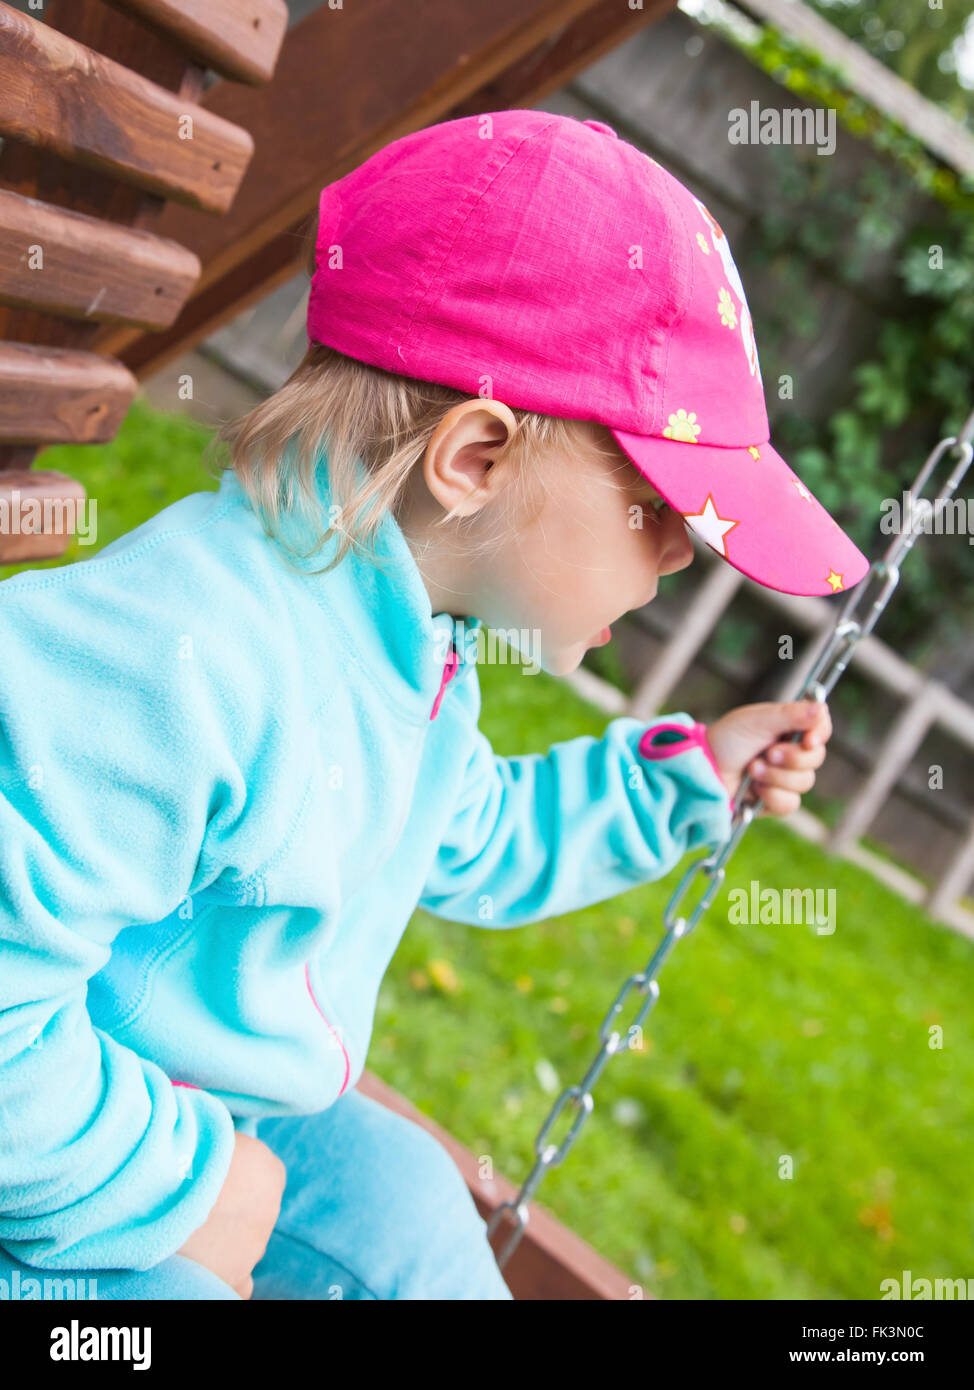 Outdoor ritratto di strani piccoli bambini in una rosa cappello da baseball su uno swing Foto Stock